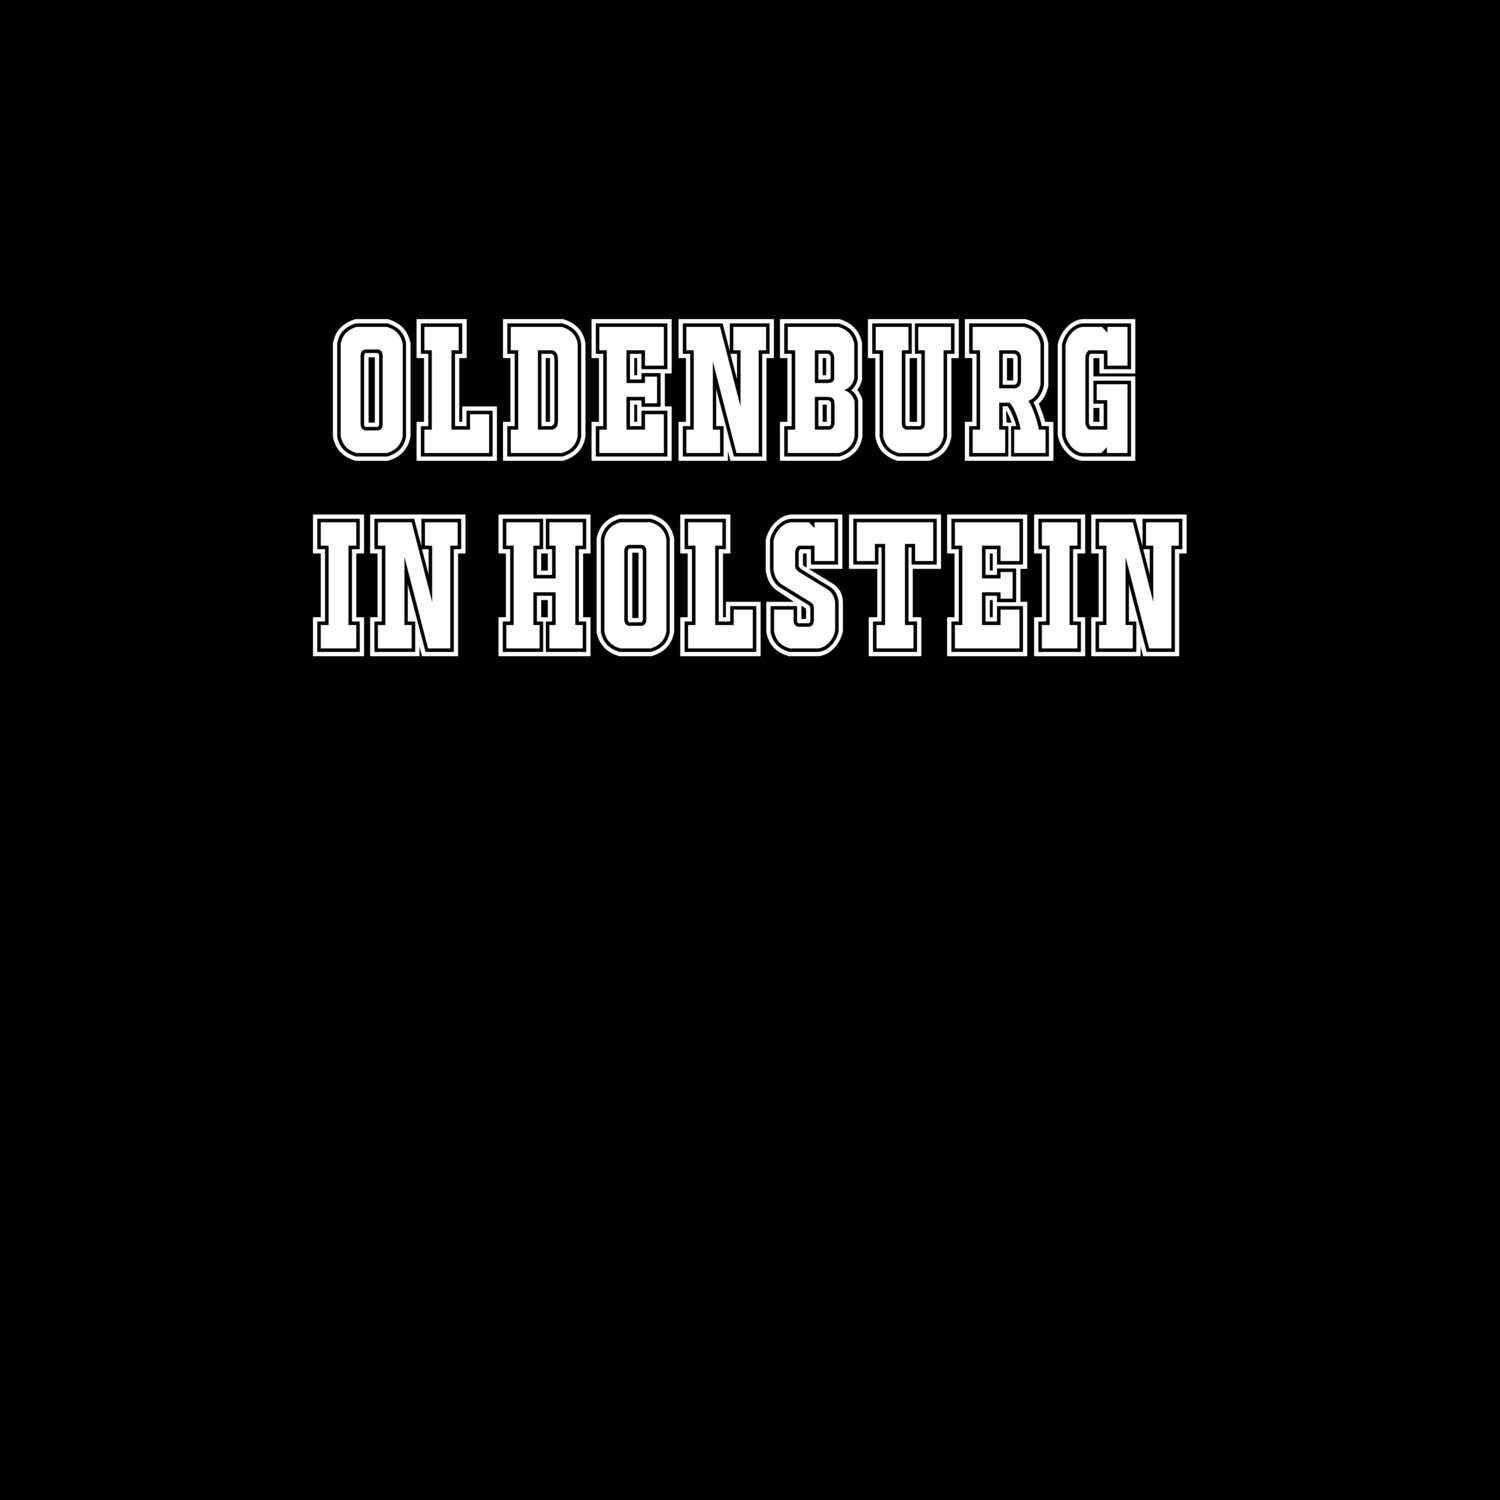 Oldenburg in Holstein T-Shirt »Classic«